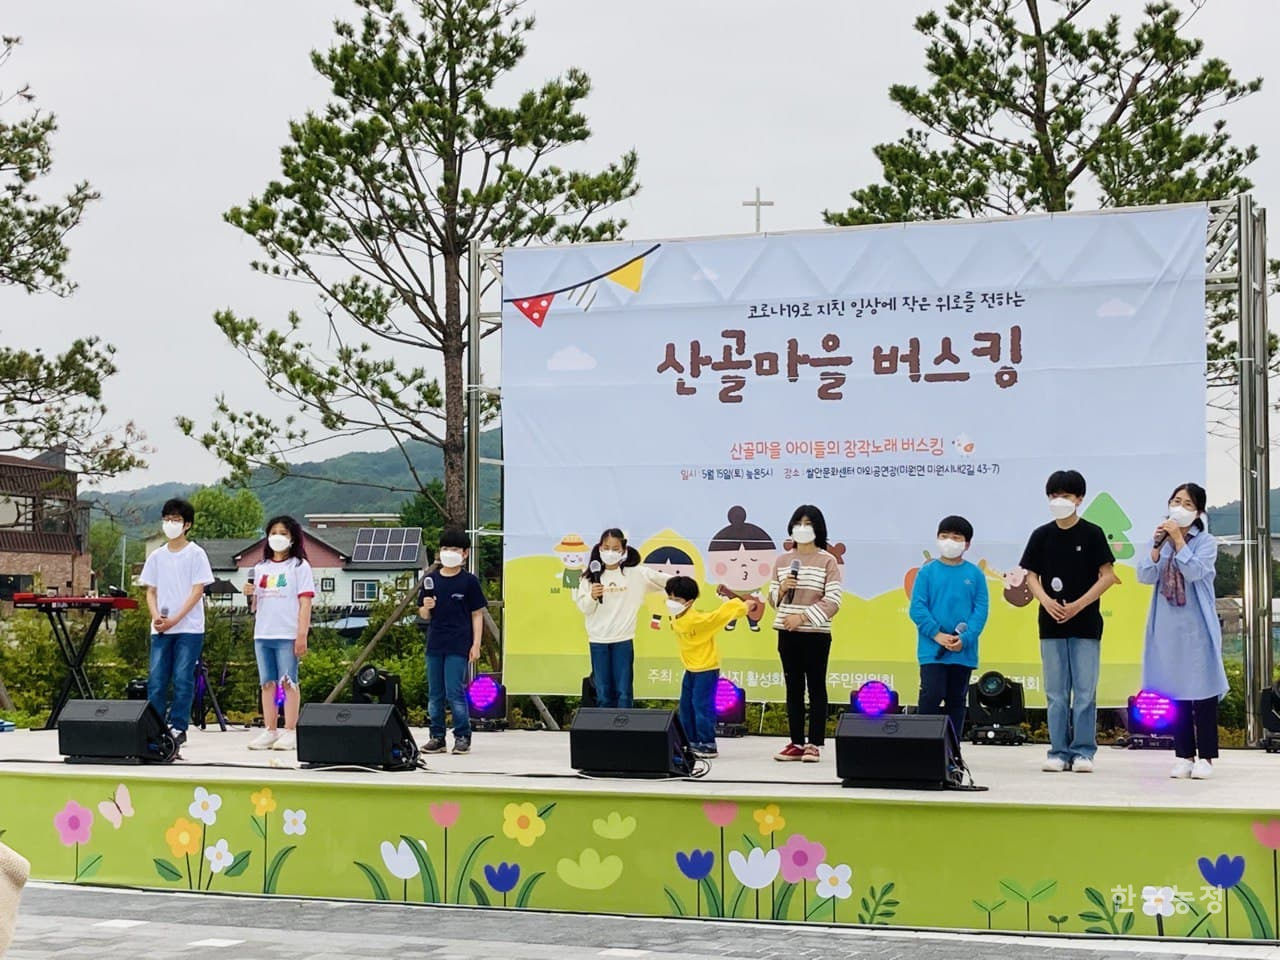 어린이 창작노래단 ‘노래하는 미원아이들’이 지난 15일 ‘산골마을 아이들의 창작노래 버스킹’ 행사에서 창작곡을 부르고 있다.